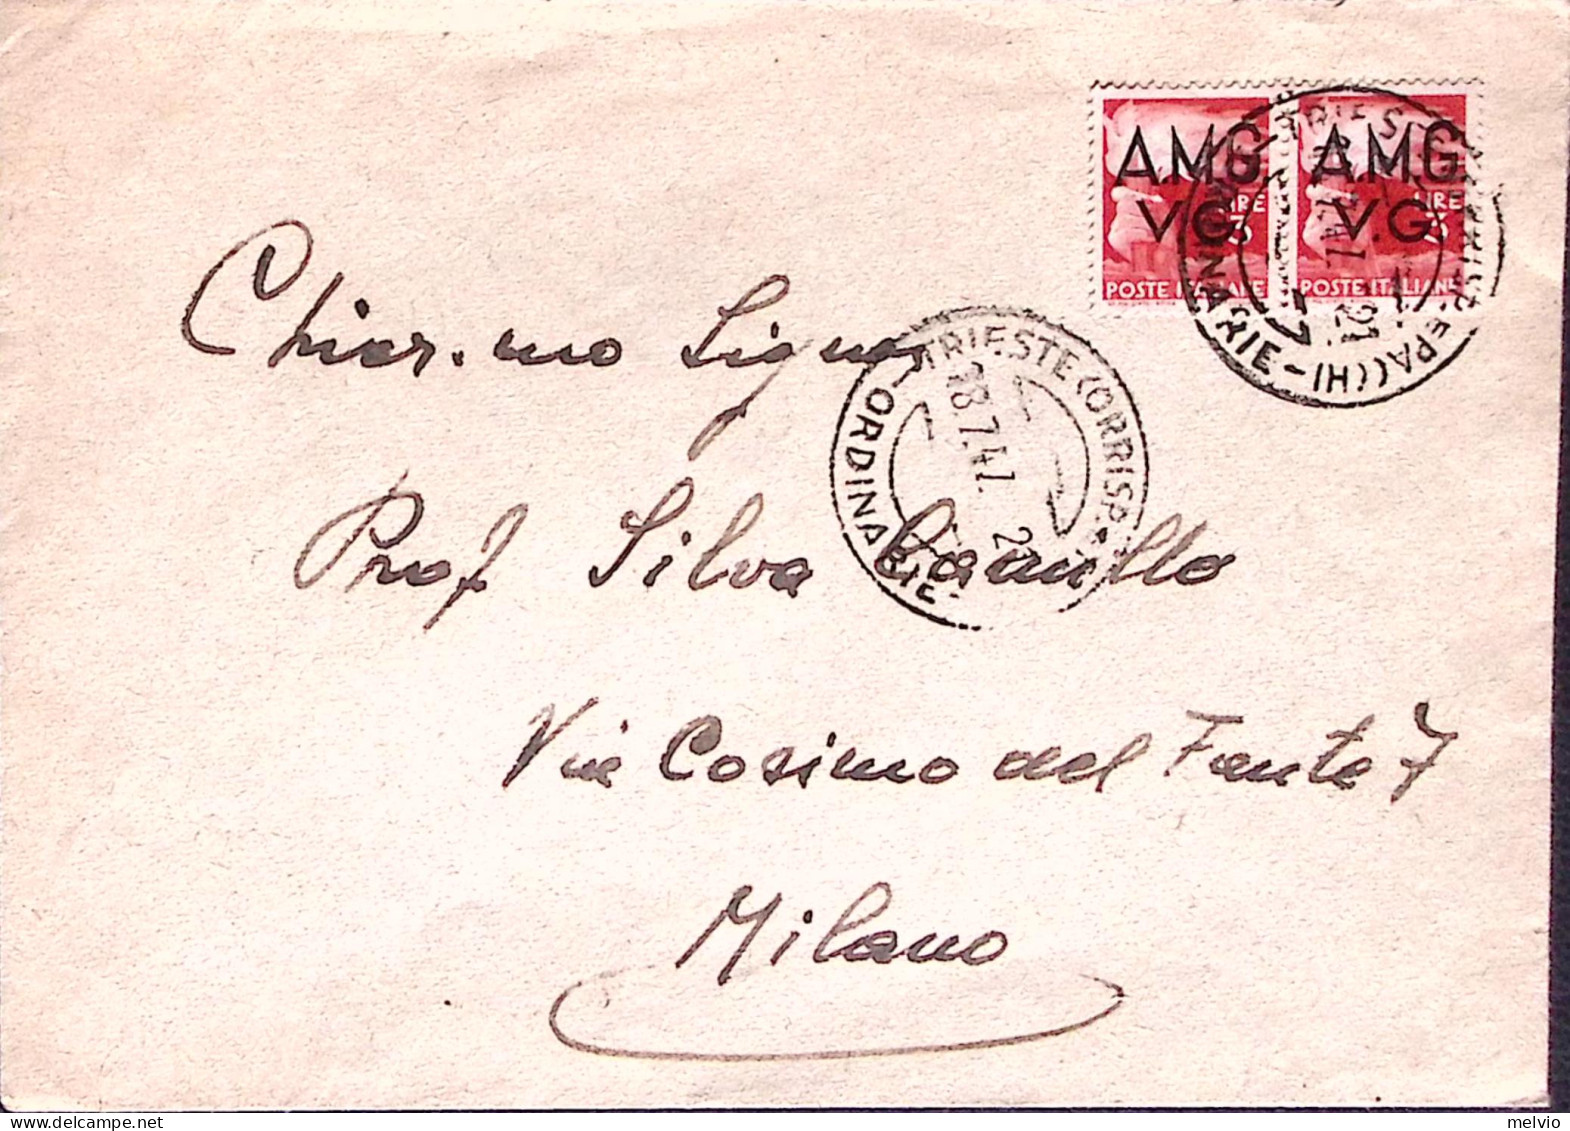 1947-A.M.G.-V.G. Democratica Coppia Lire 3, Su Busta Trieste (18.7) - Poststempel